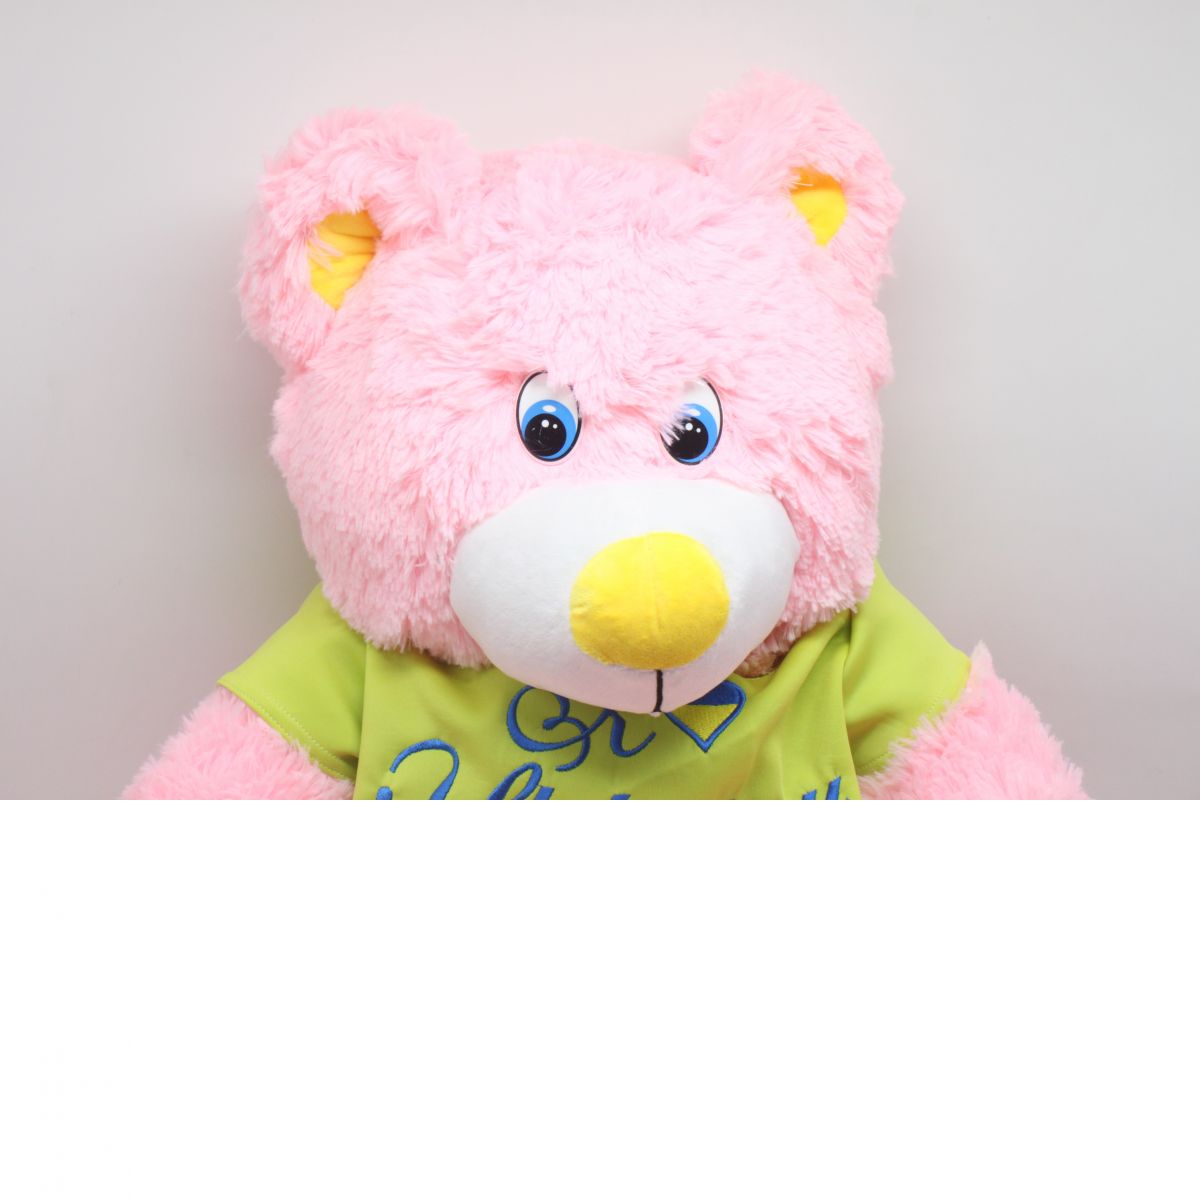 Плюшевая игрушка "Мишка Барни", 50 см, розовый